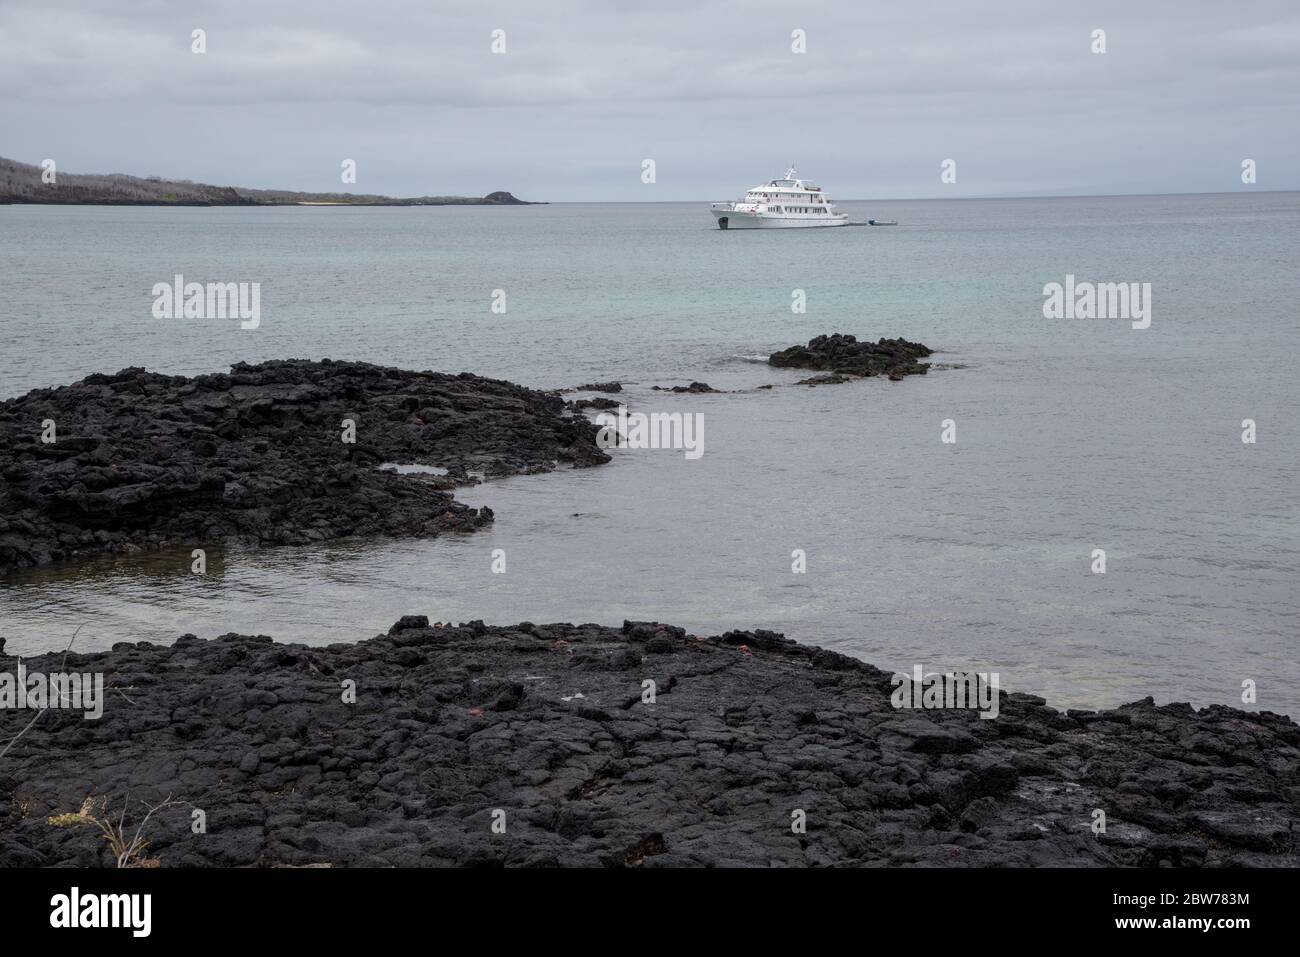 Coral 2 crucero en barco frente de la playa arenosa y rocosa de lava en la colina del Dragón en Santa Cruz en las Islas Galápagos. Foto de stock